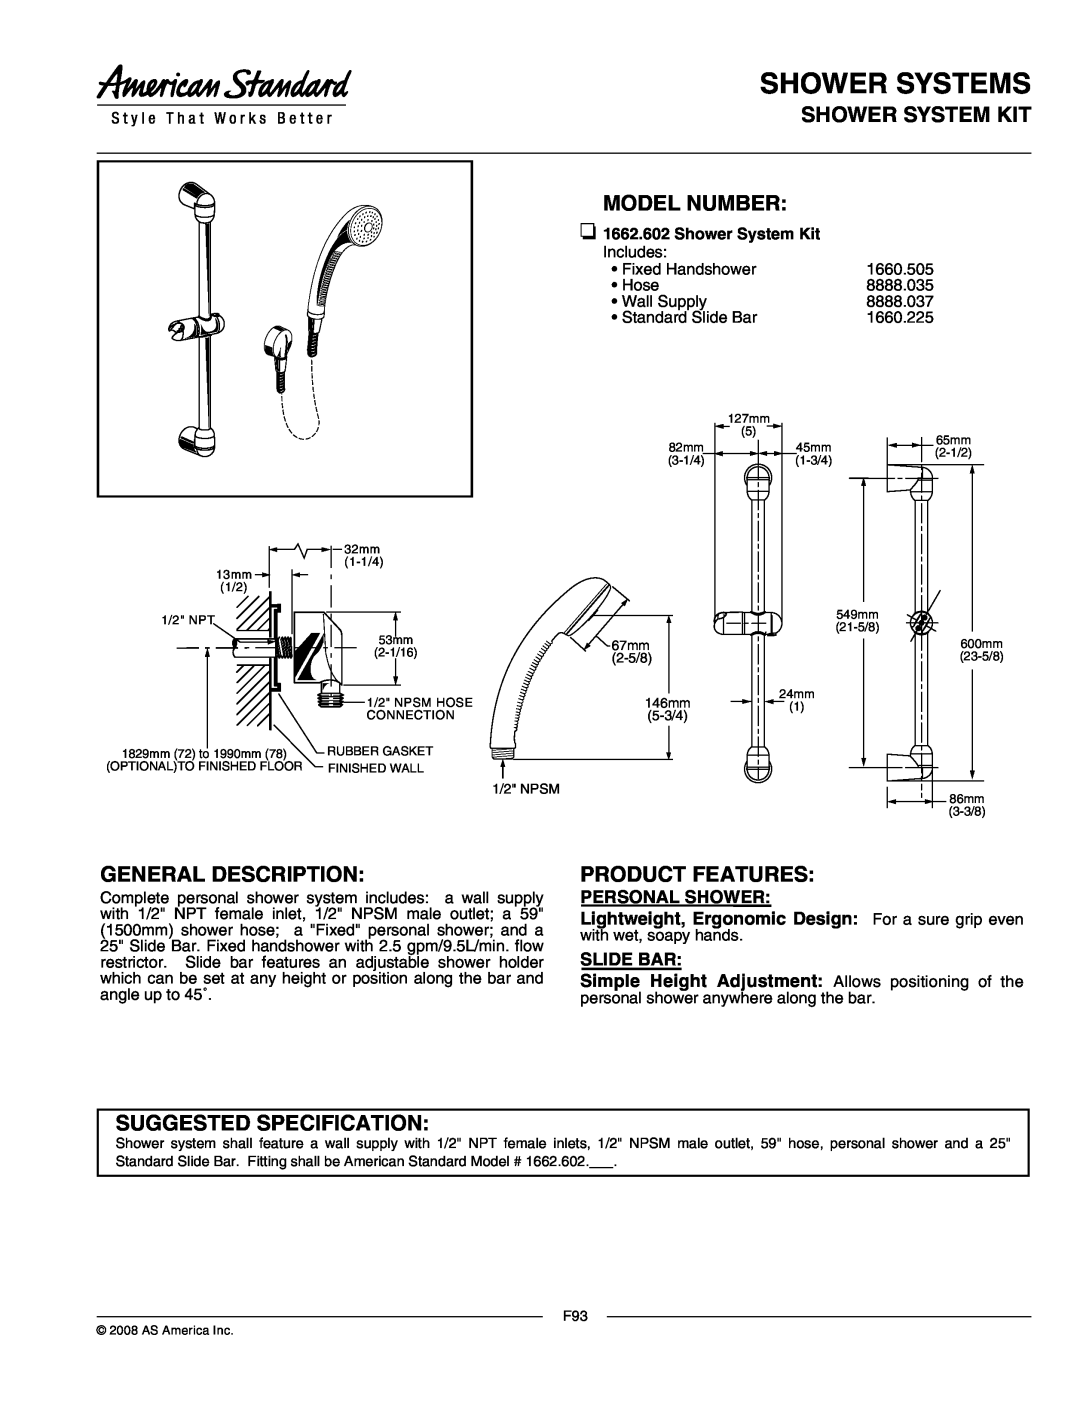 American Standard 1662.602 specifications Shower Systems, Shower System Kit Model Number, General Description, Slide Bar 